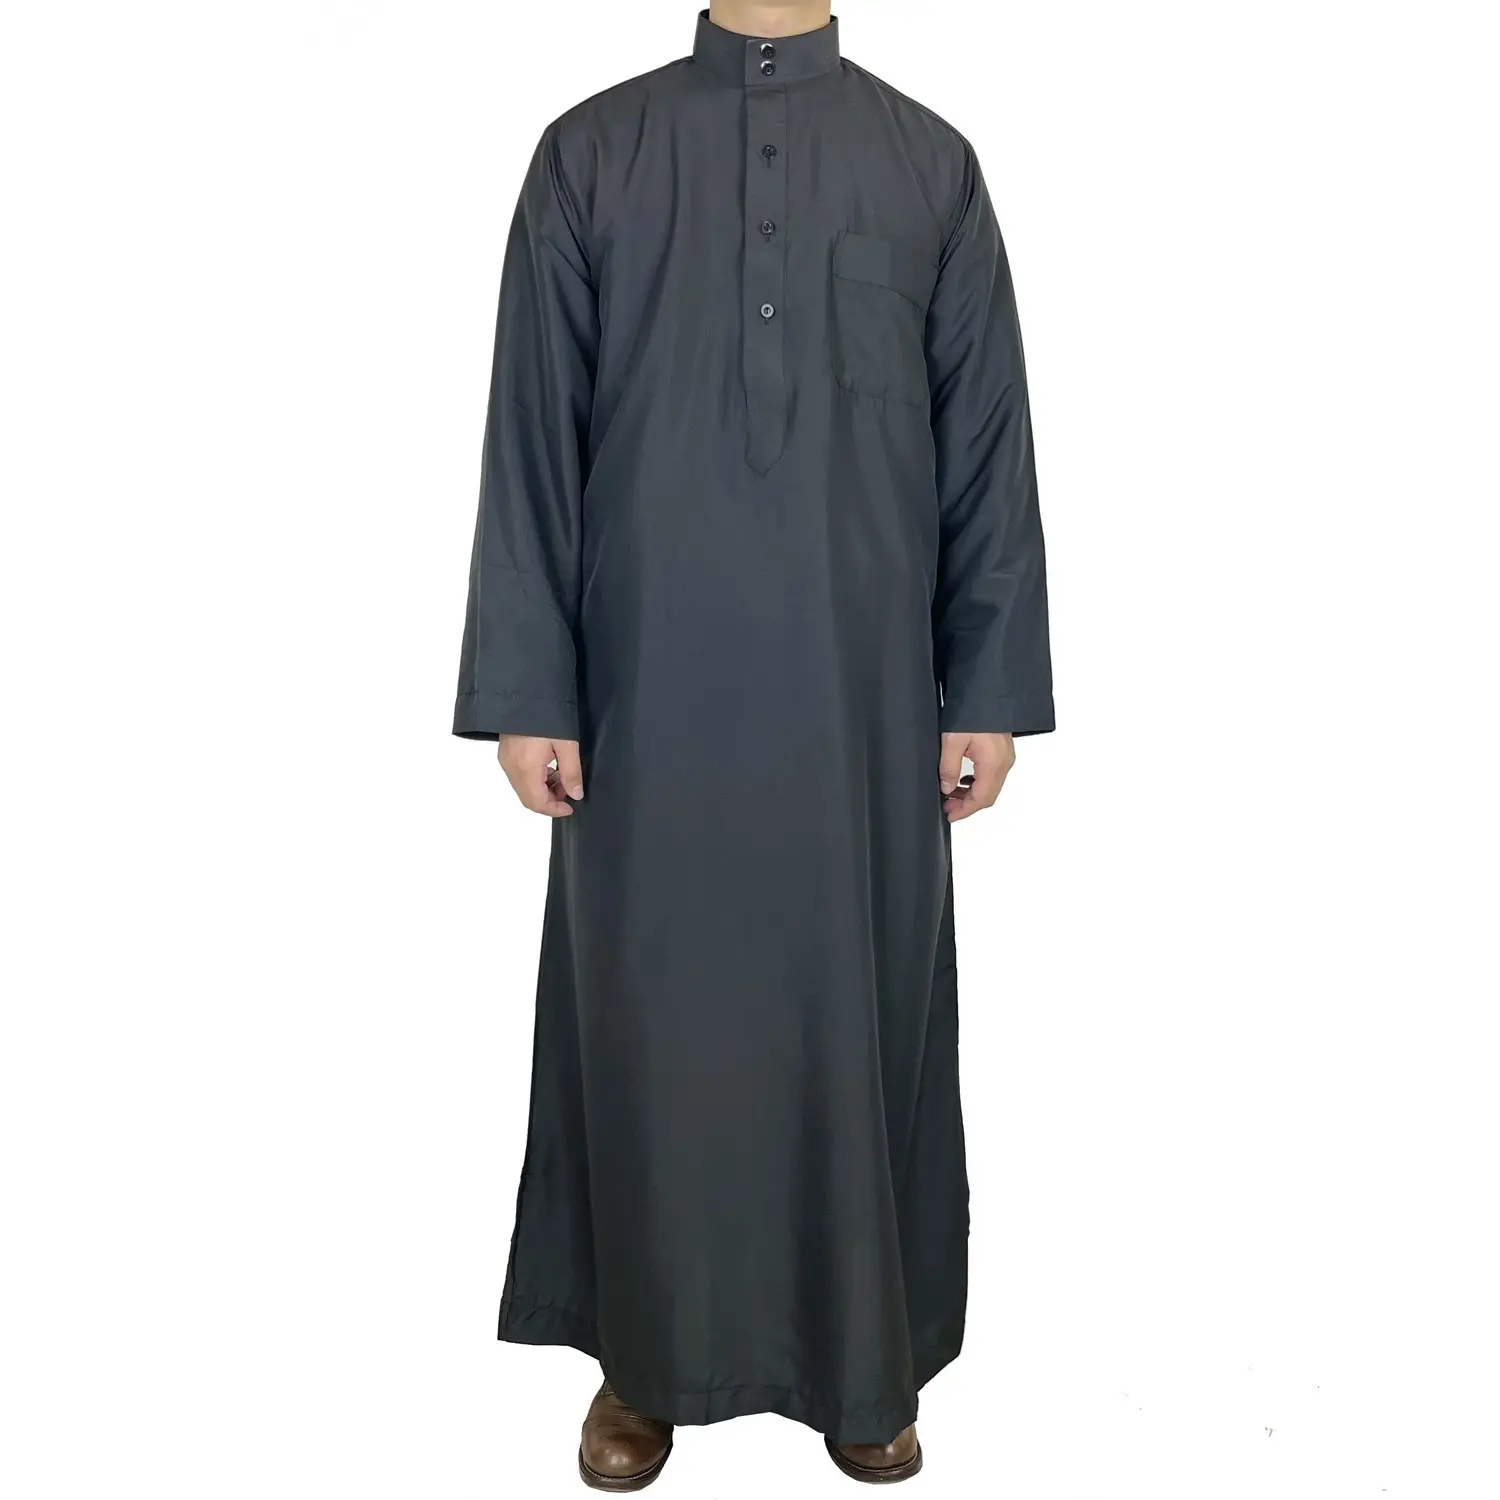 عباية خمار محتشمة بأكمام طويلة ملابس للمسلمين المملكة العربية السعودية قبطان ثوب عربي فستان طويل للرجال